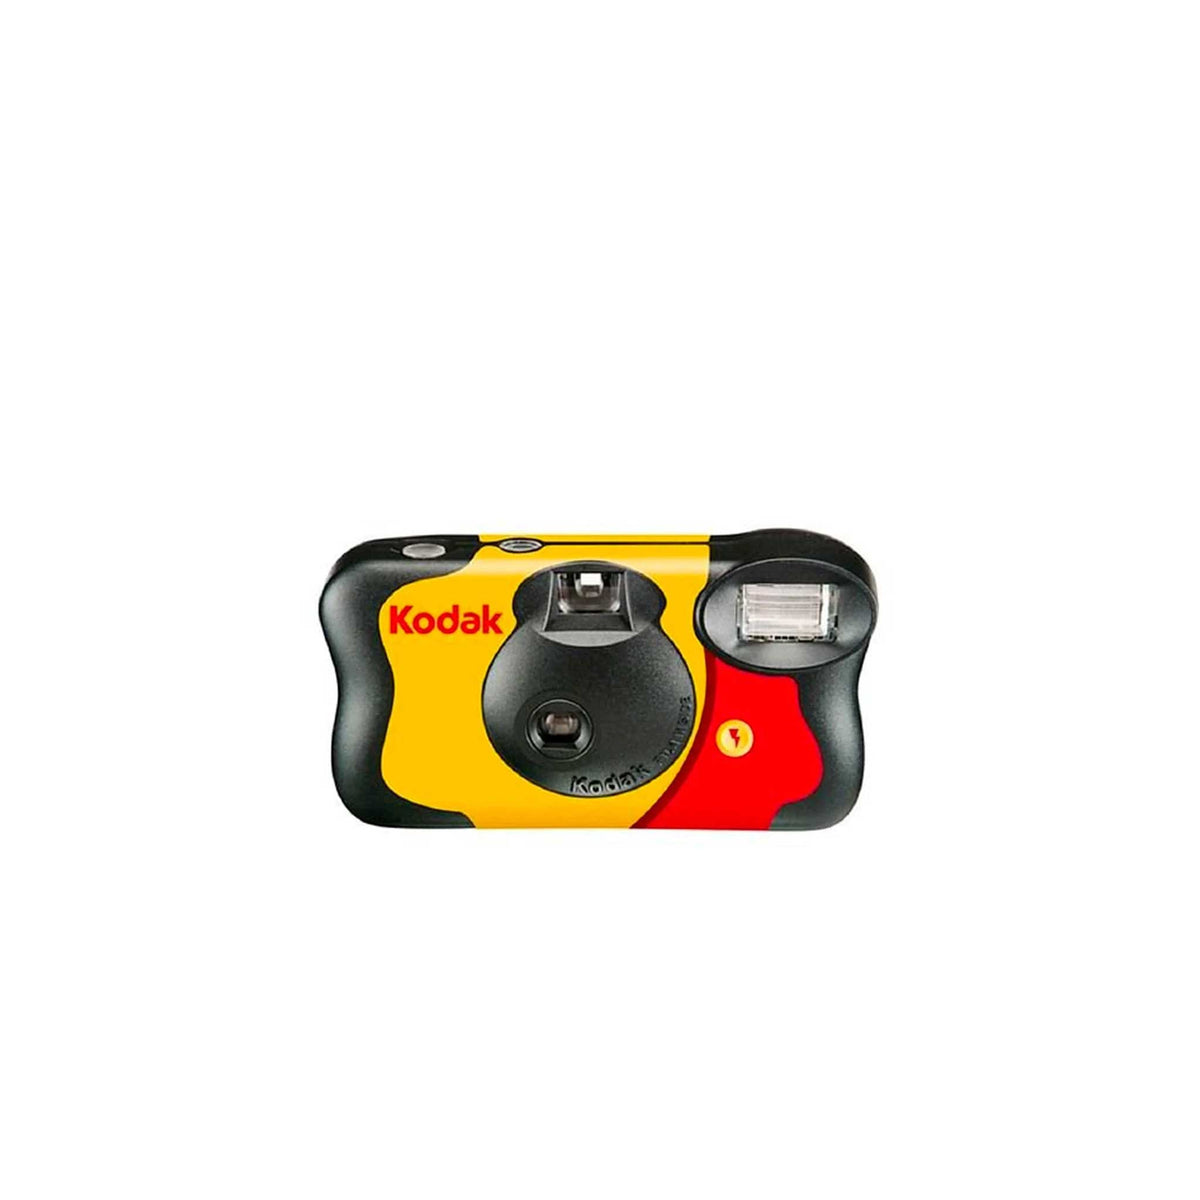 Kodak FunSaver Disposable Camera 35mm [LENS ONLY] for DYI Digital